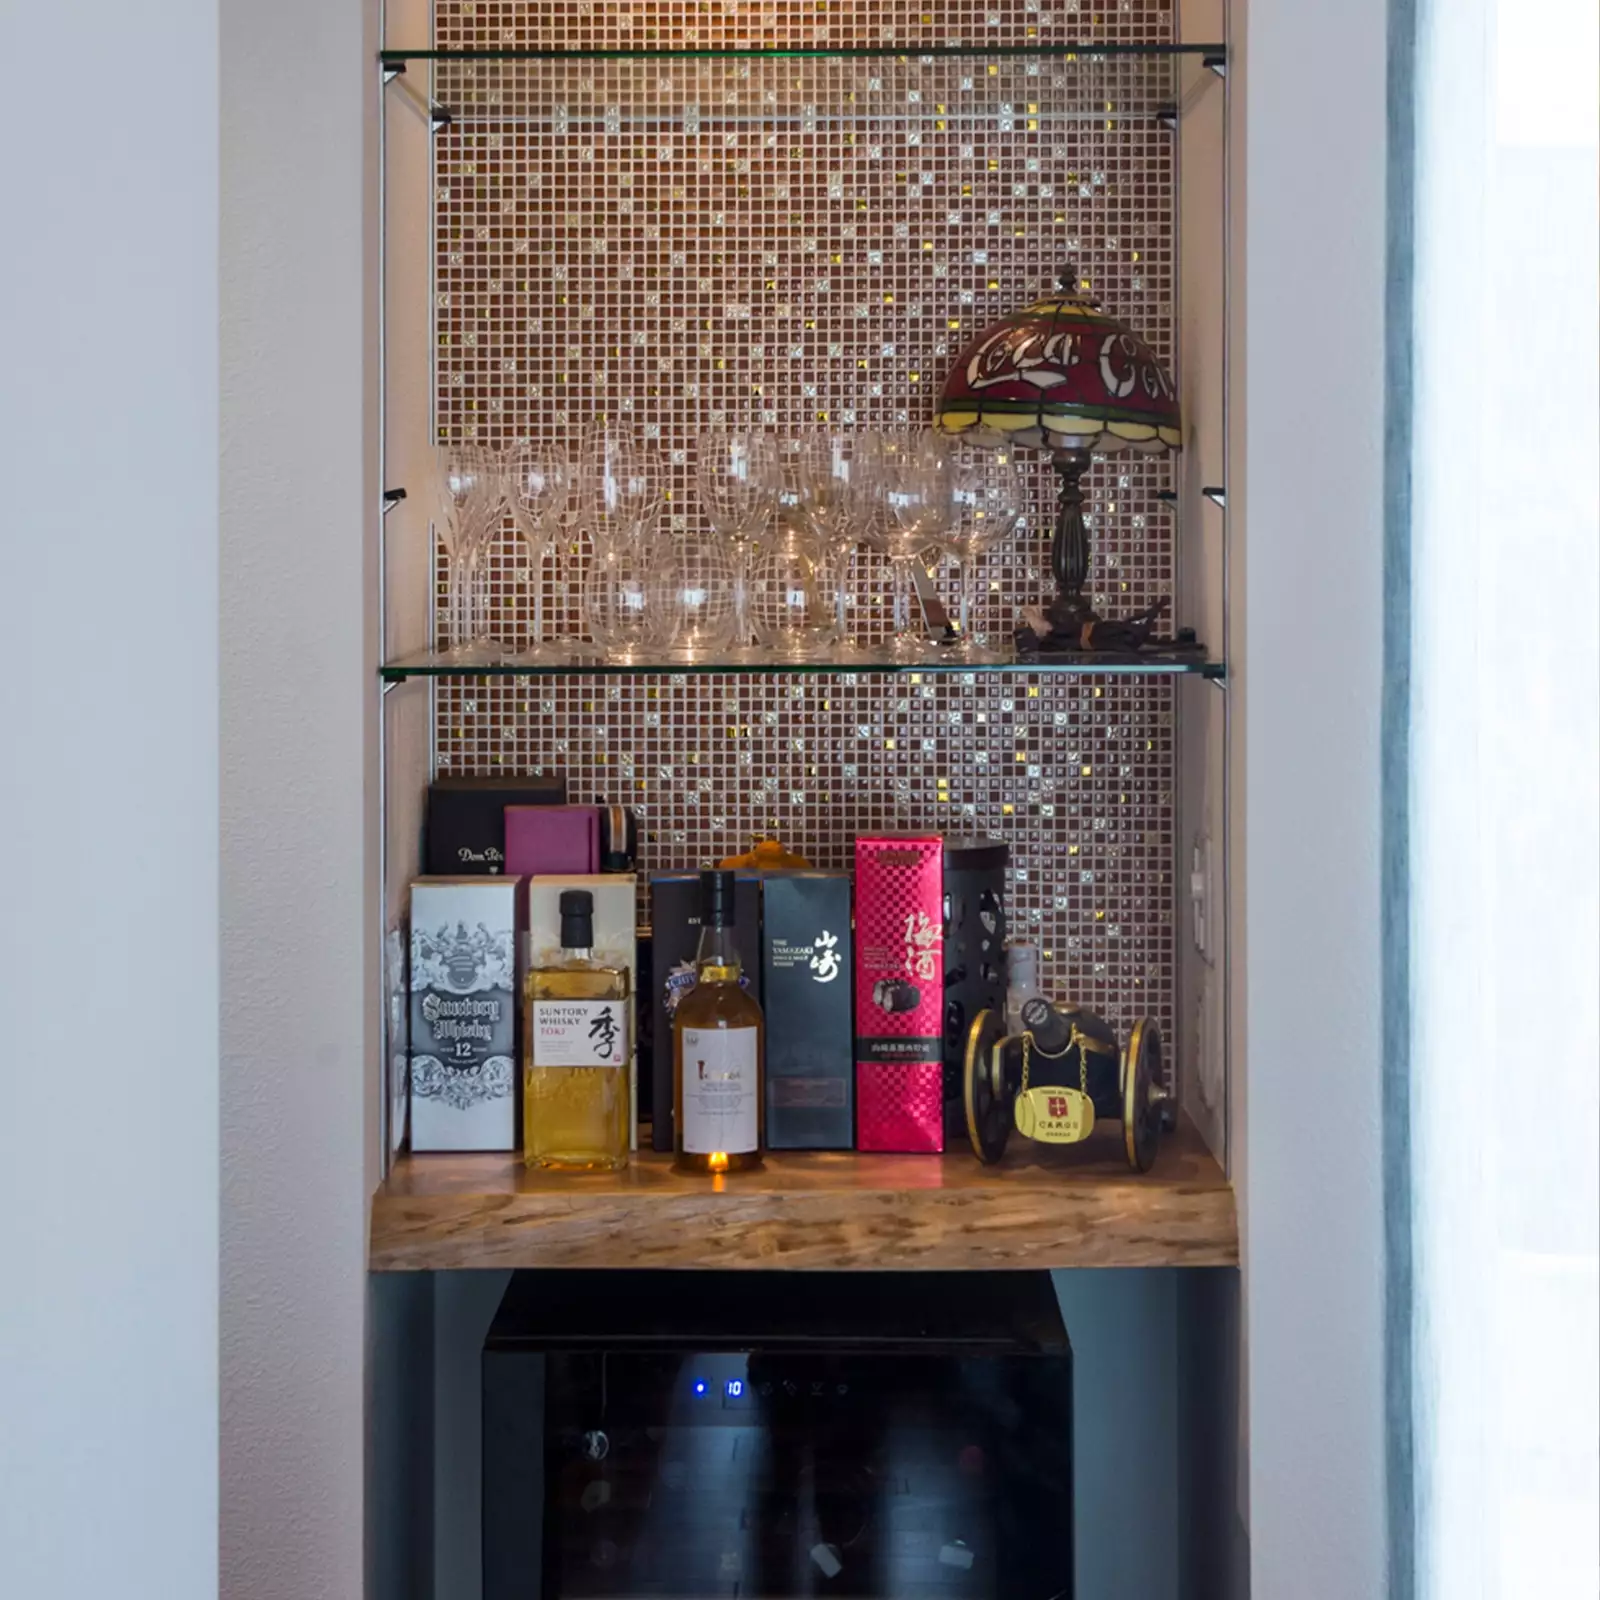 R+houseの物件のバーコーナーの写真です。モザイクタイルを背面に貼った棚にグラスやお酒がある。下部にはワインセラーも。